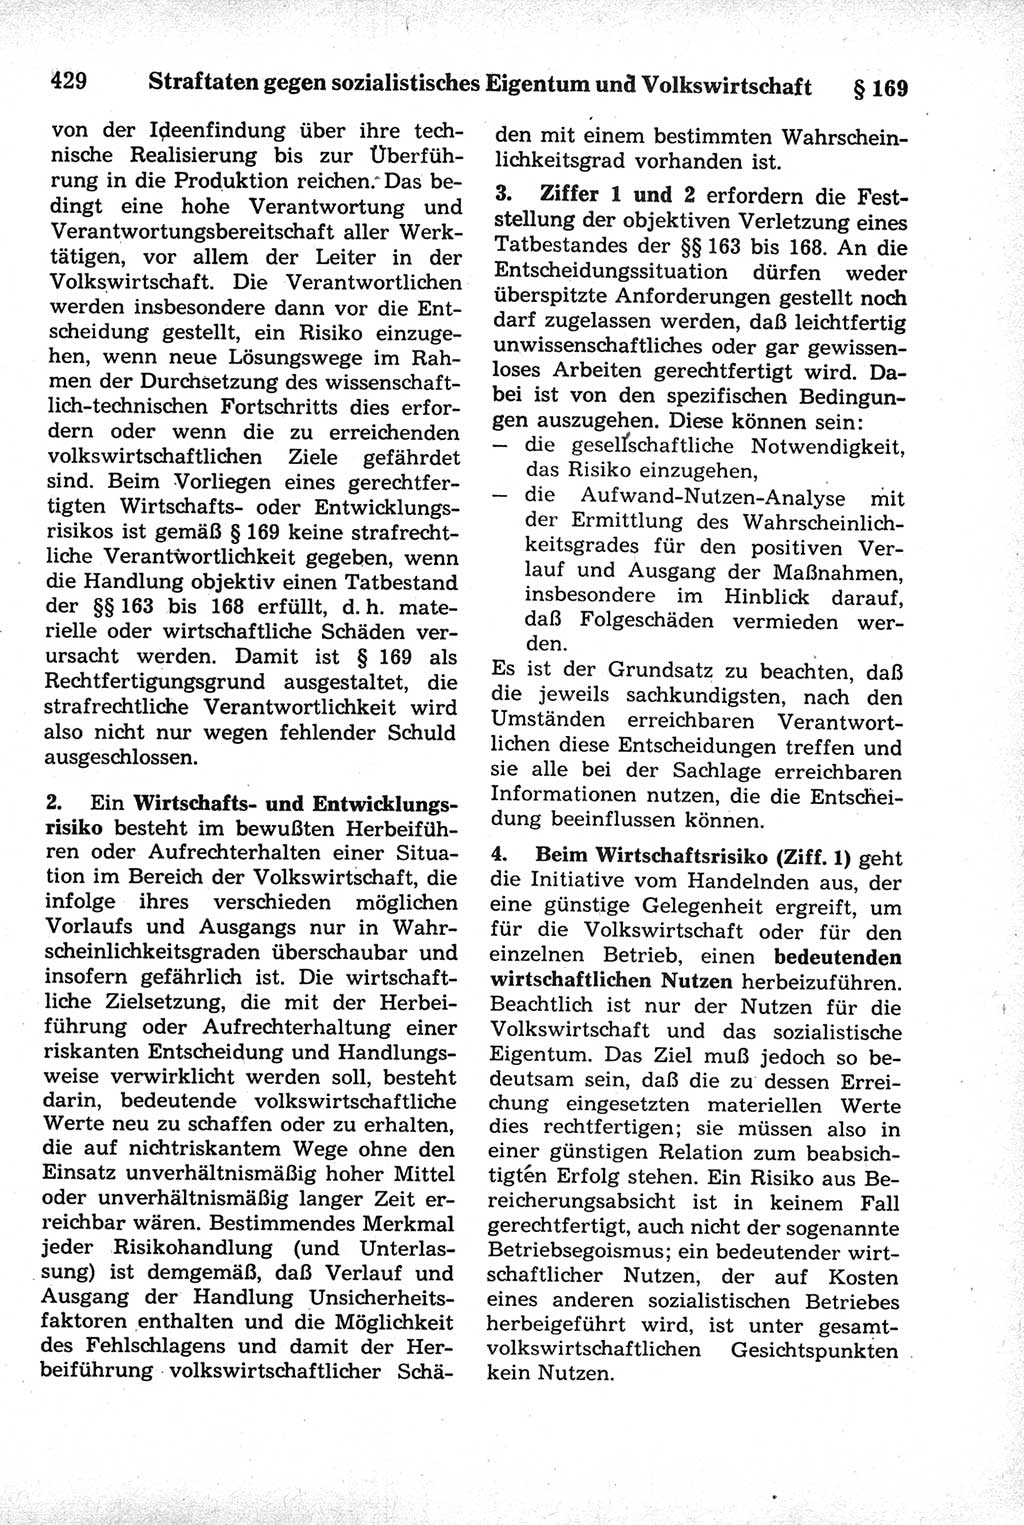 Strafrecht der Deutschen Demokratischen Republik (DDR), Kommentar zum Strafgesetzbuch (StGB) 1981, Seite 429 (Strafr. DDR Komm. StGB 1981, S. 429)